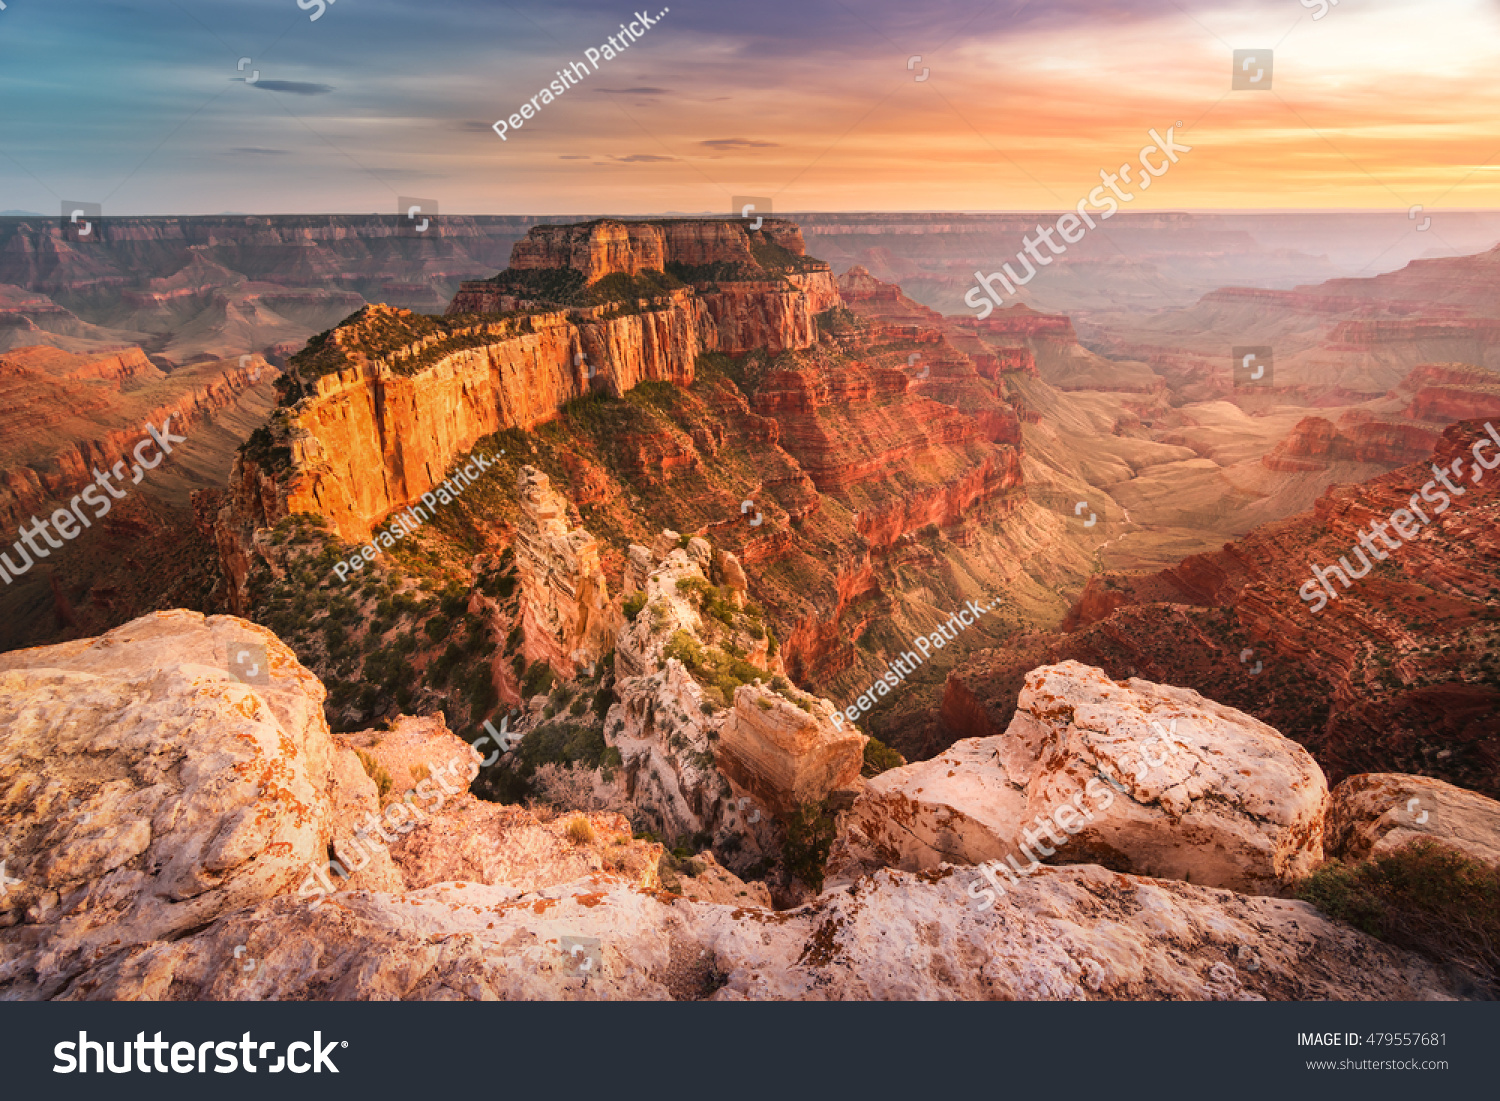 Photo De Stock De Magnifique Paysage Du Grand Canyon